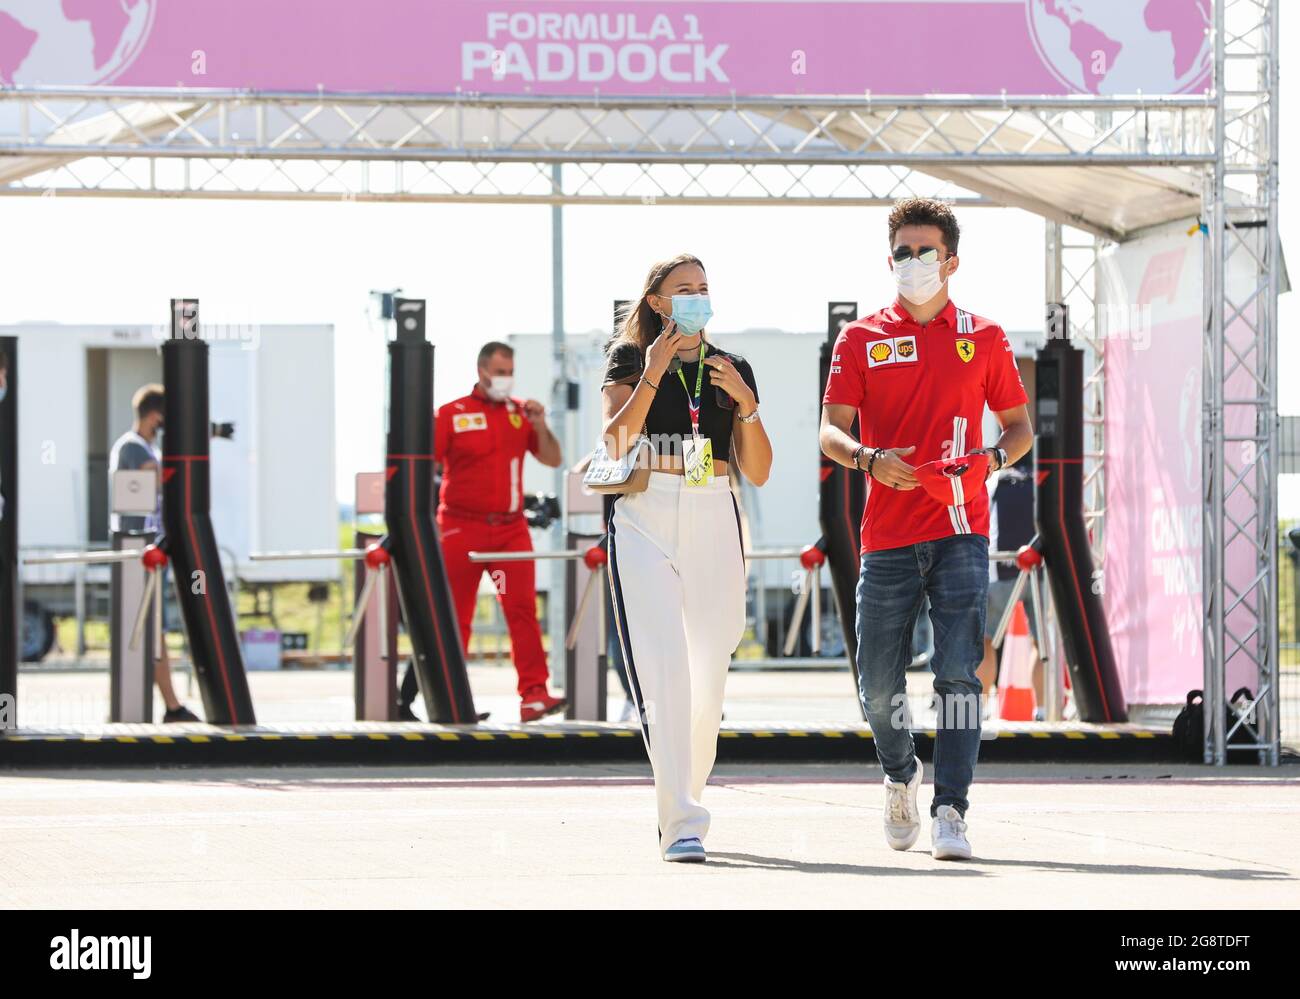 LECLERC Charles (mco), Scuderia Ferrari SF21, Et sa petite amie SINE Charlotte, portrait lors du Pirelli Formule 1 Grand Prix 2021, 10e manche du Championnat du monde de Formule 1 2021 de la FIA du 16 au 18 juillet 2021 sur le circuit Silverstone, à Silverstone, Royaume-Uni - photo Antonin Vincent / DPPI Banque D'Images